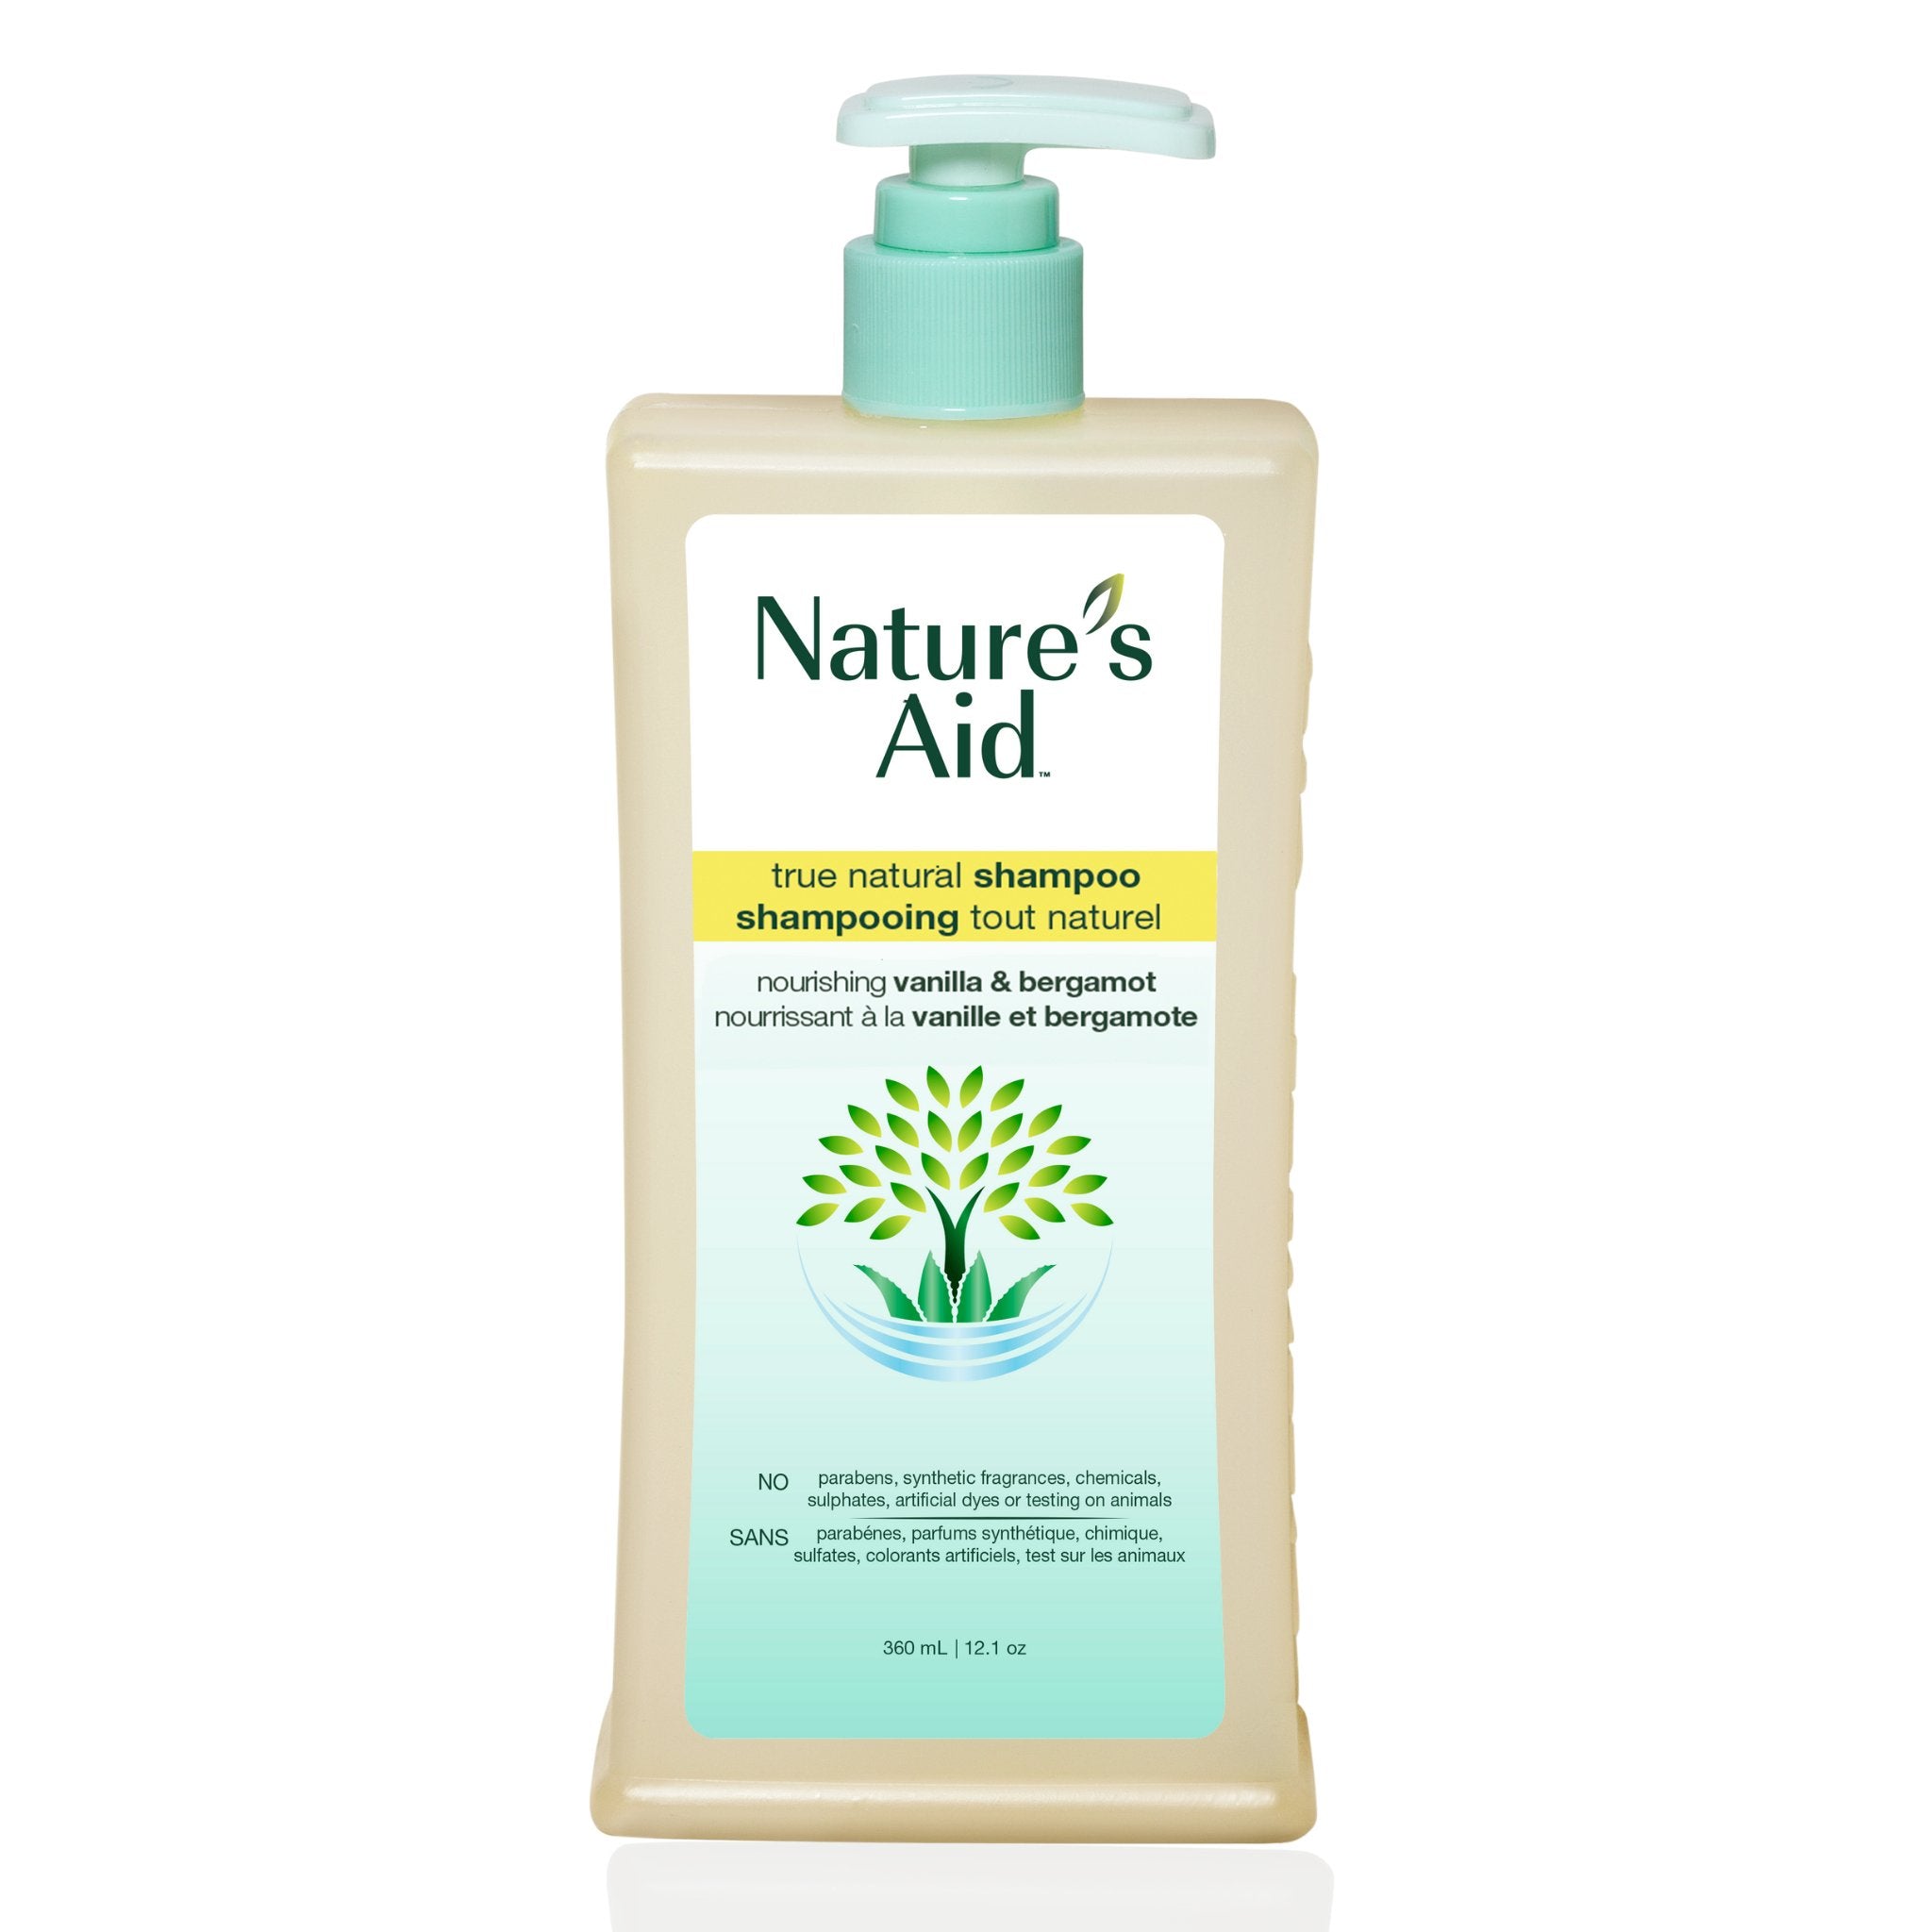 Shampoo | 360ml - Nature's Aid, hair care, lavender